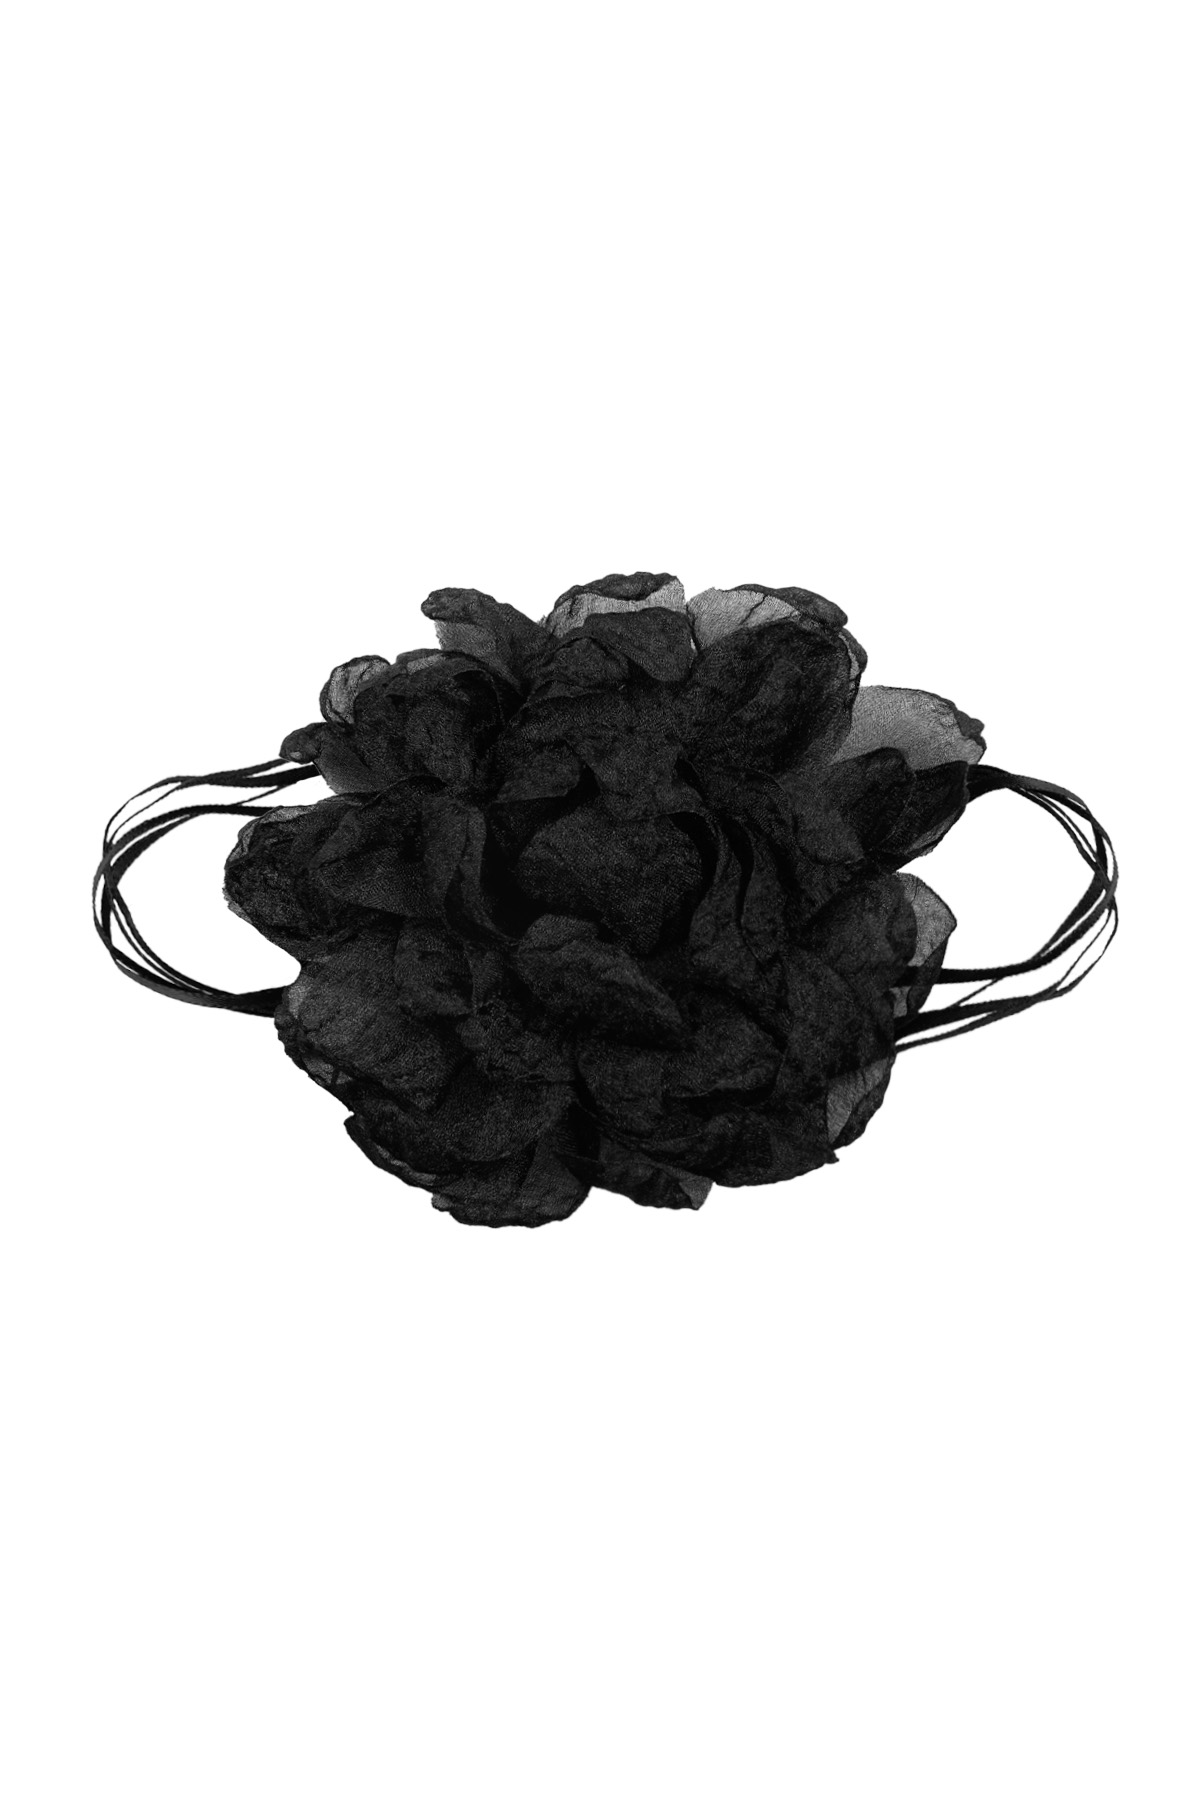 Collar cinta con flor - negro h5 